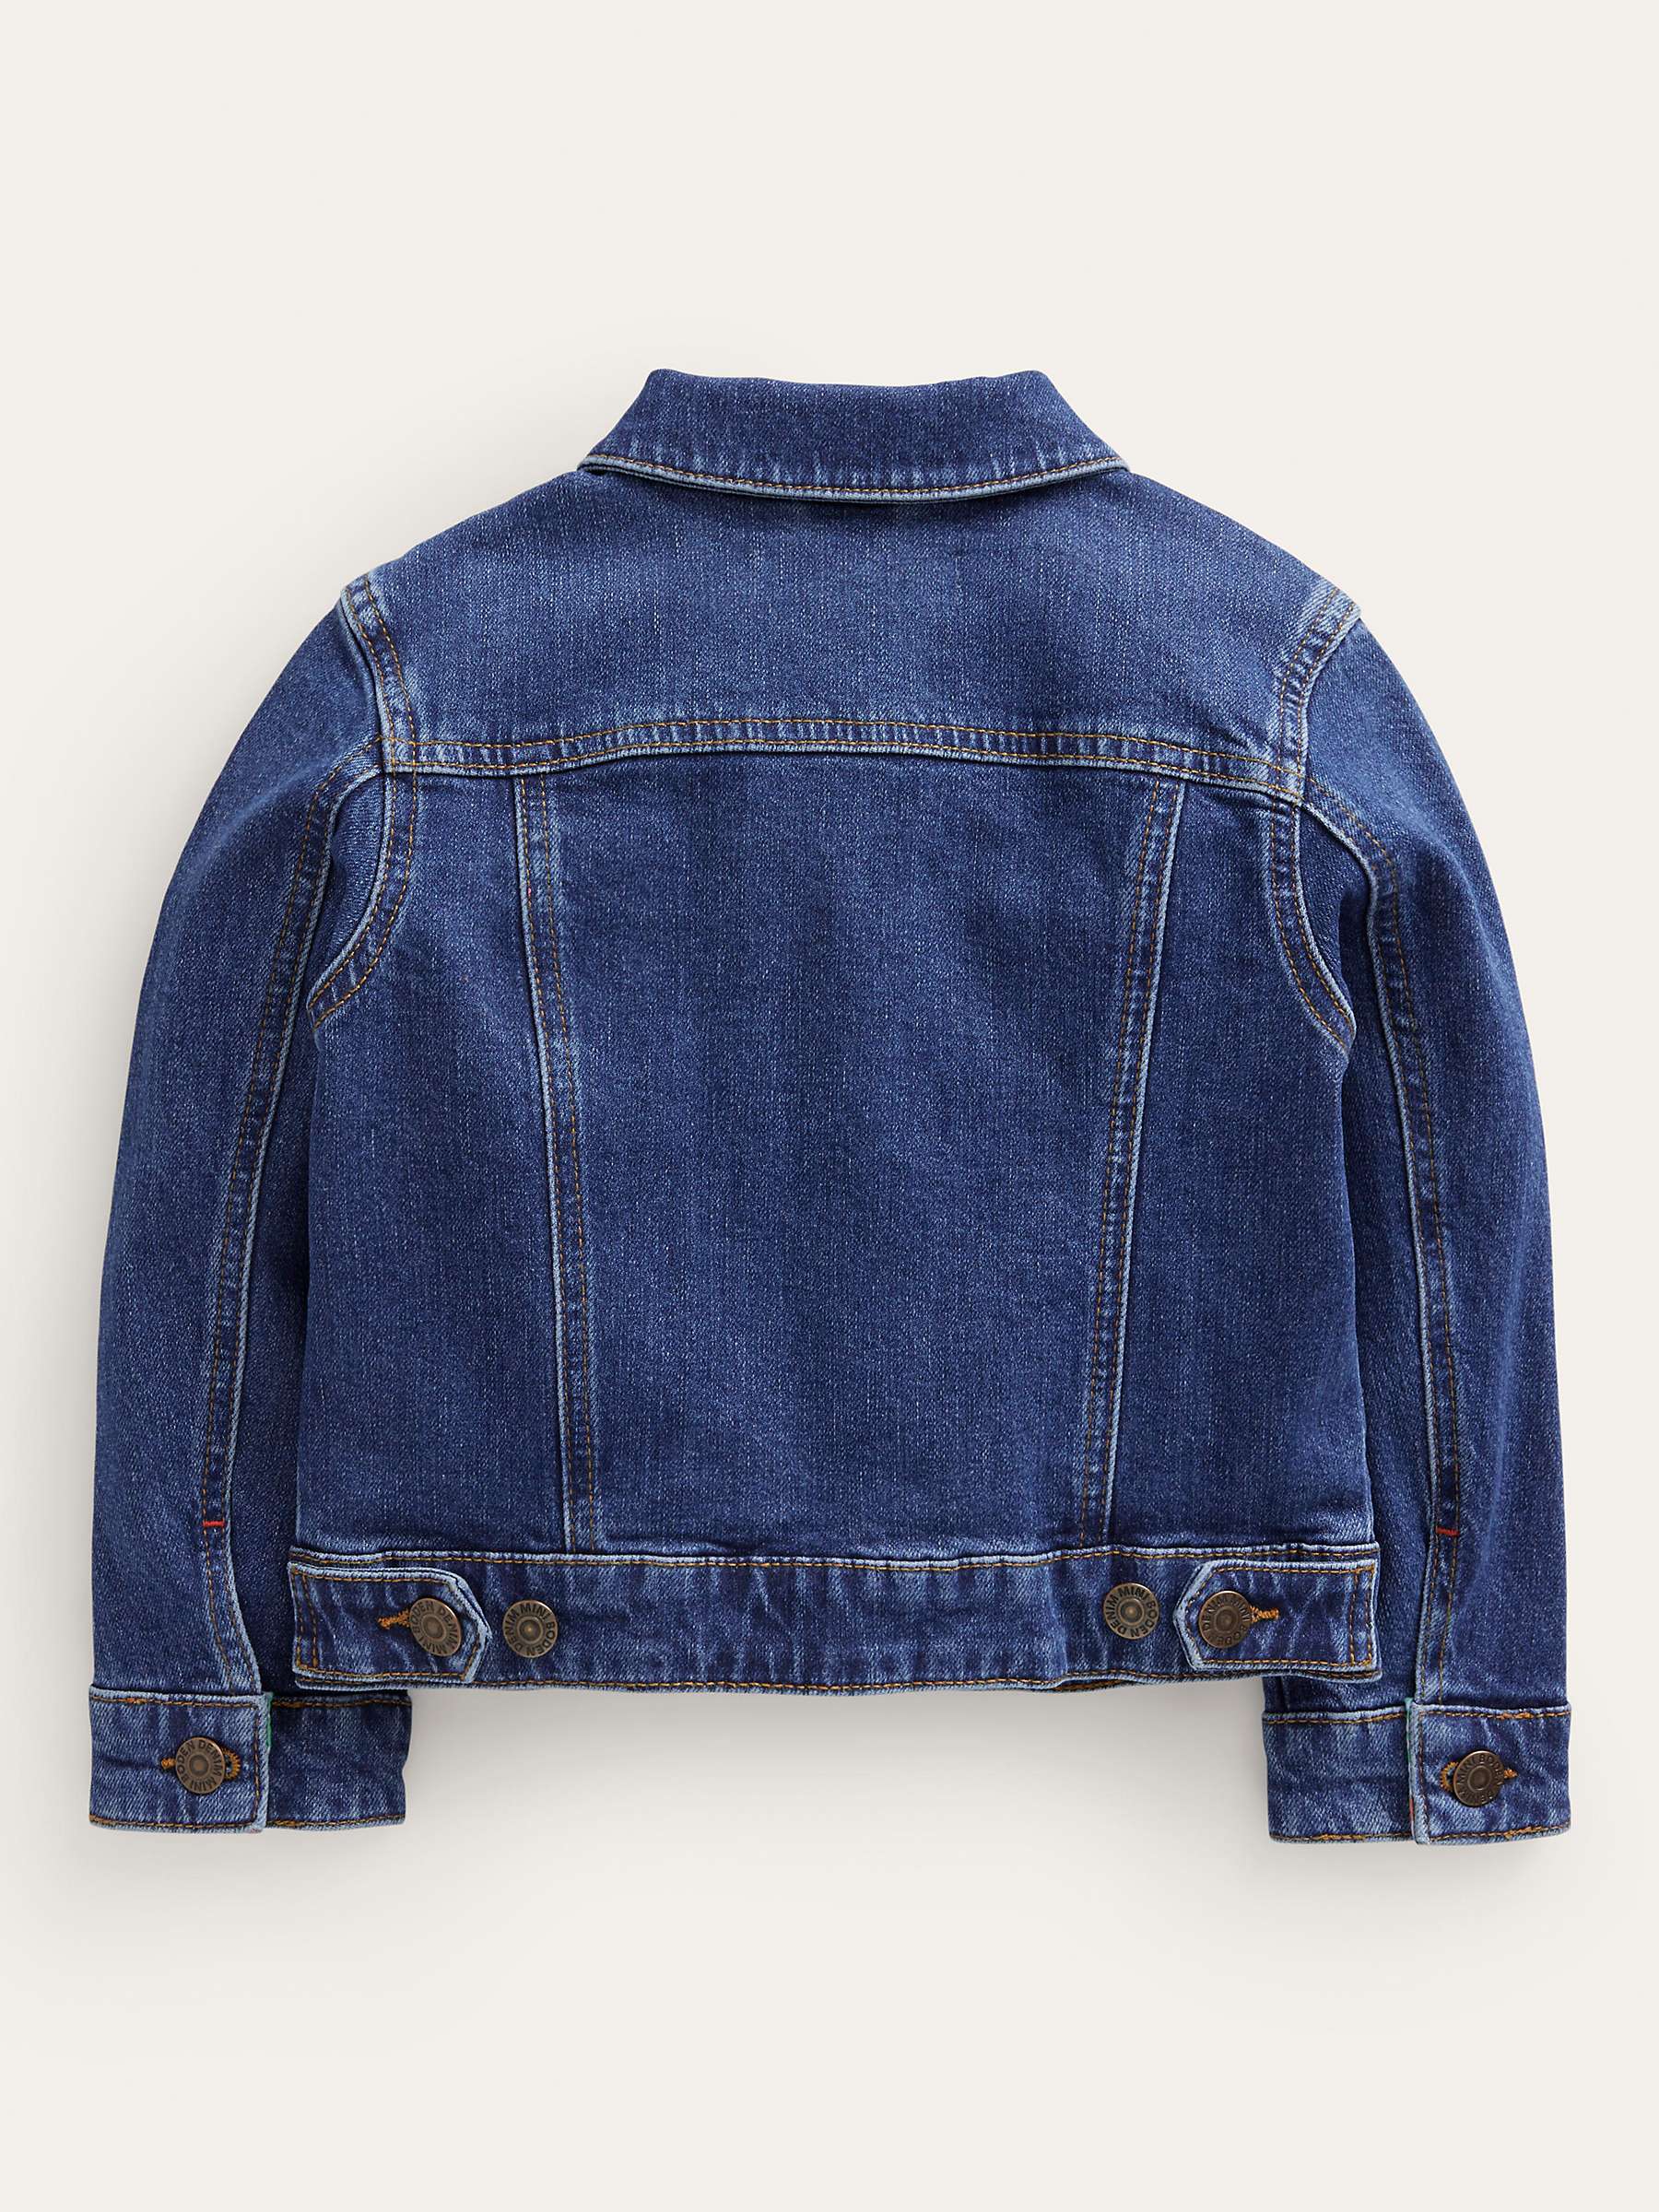 Buy Mini Boden Kids' Everyday Denim Jacket, Mid Vintage Online at johnlewis.com